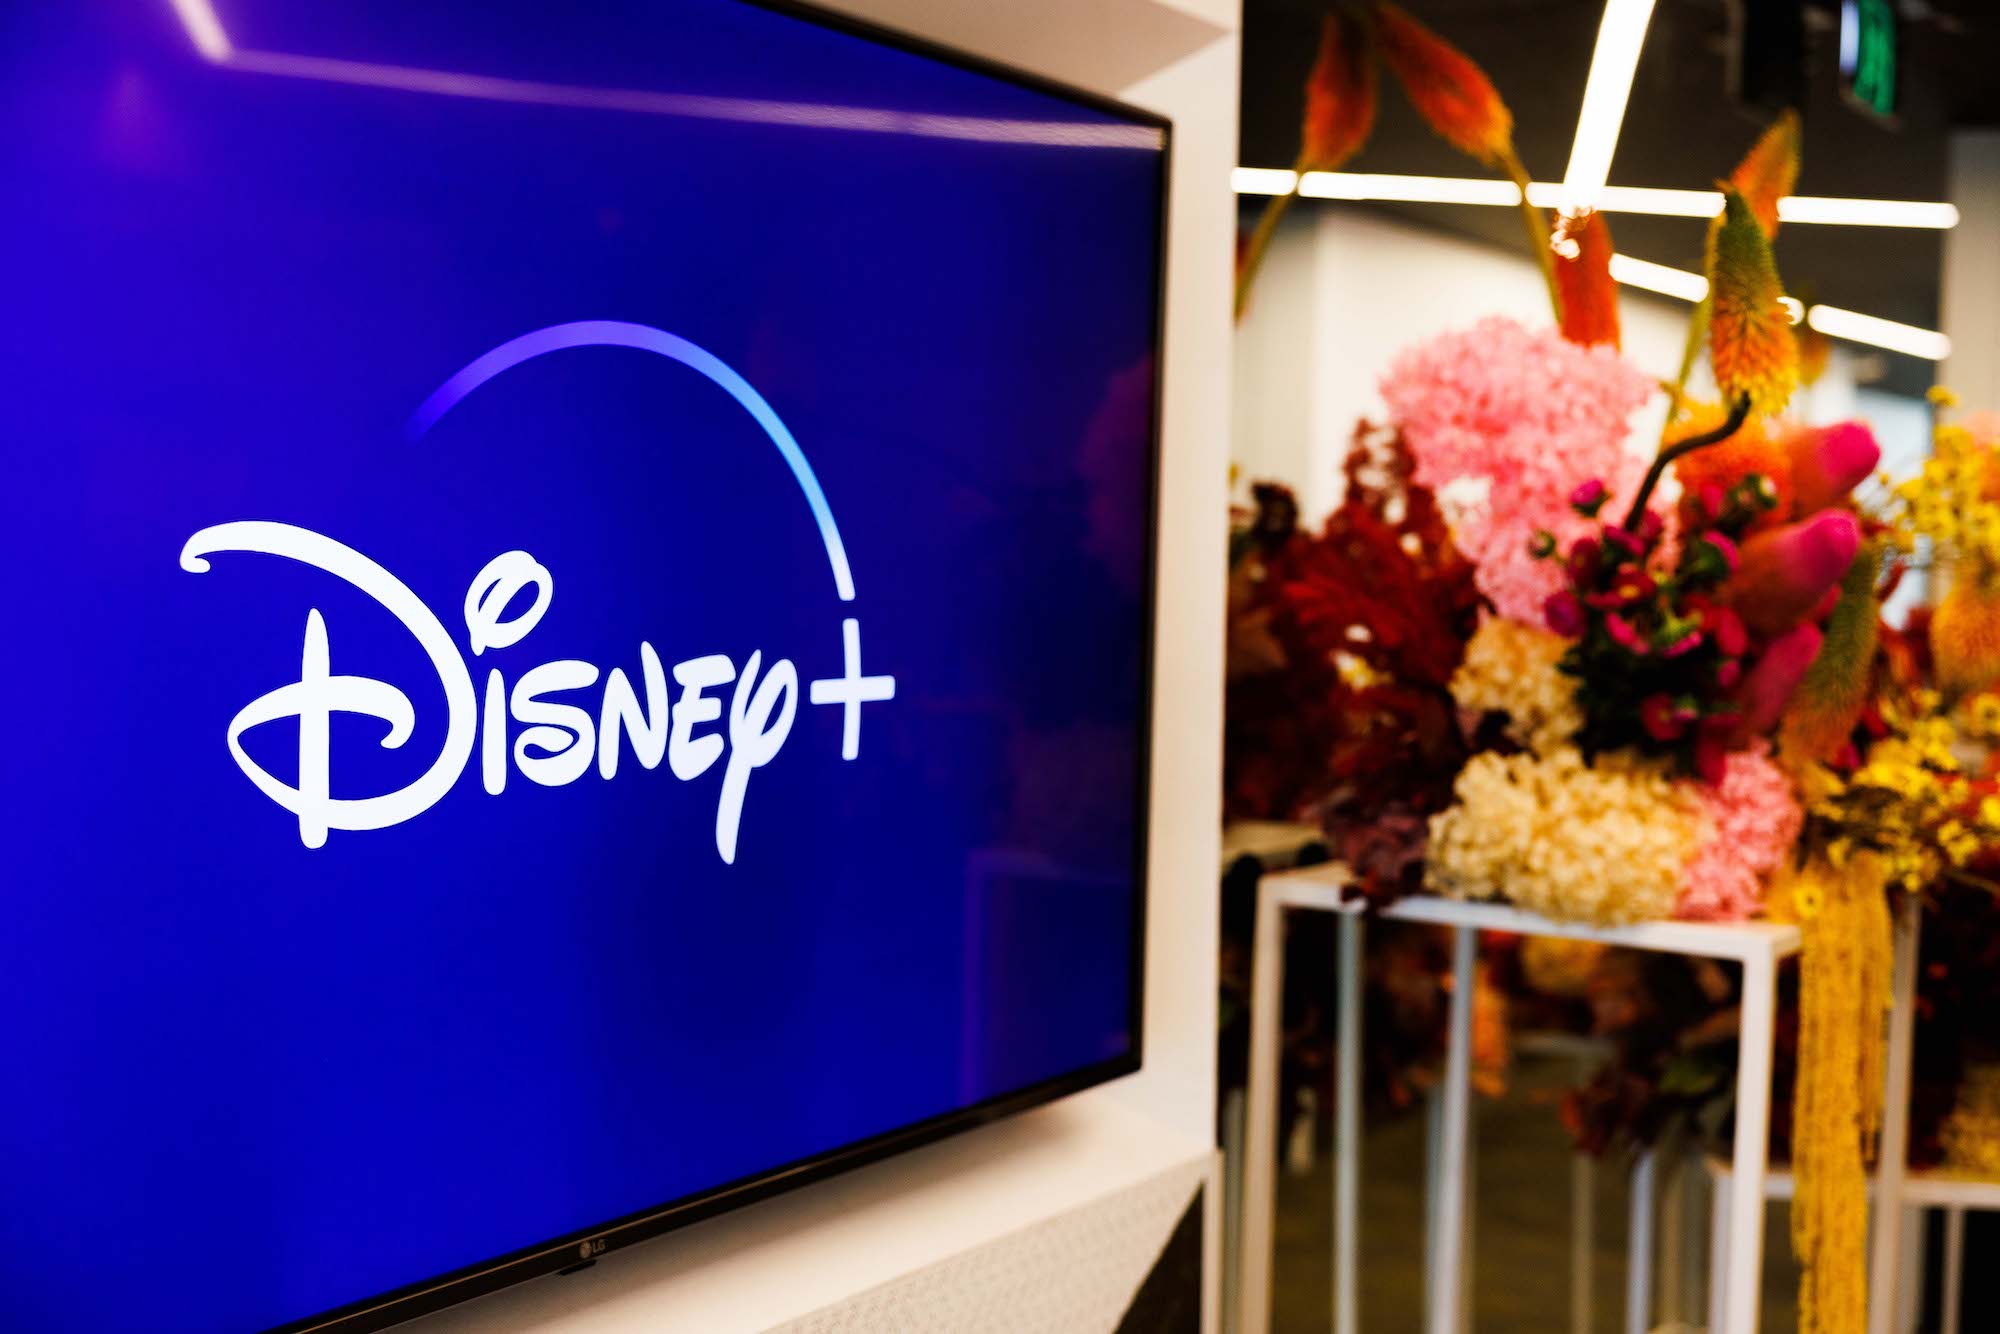 Disney Plus invests in Australian content